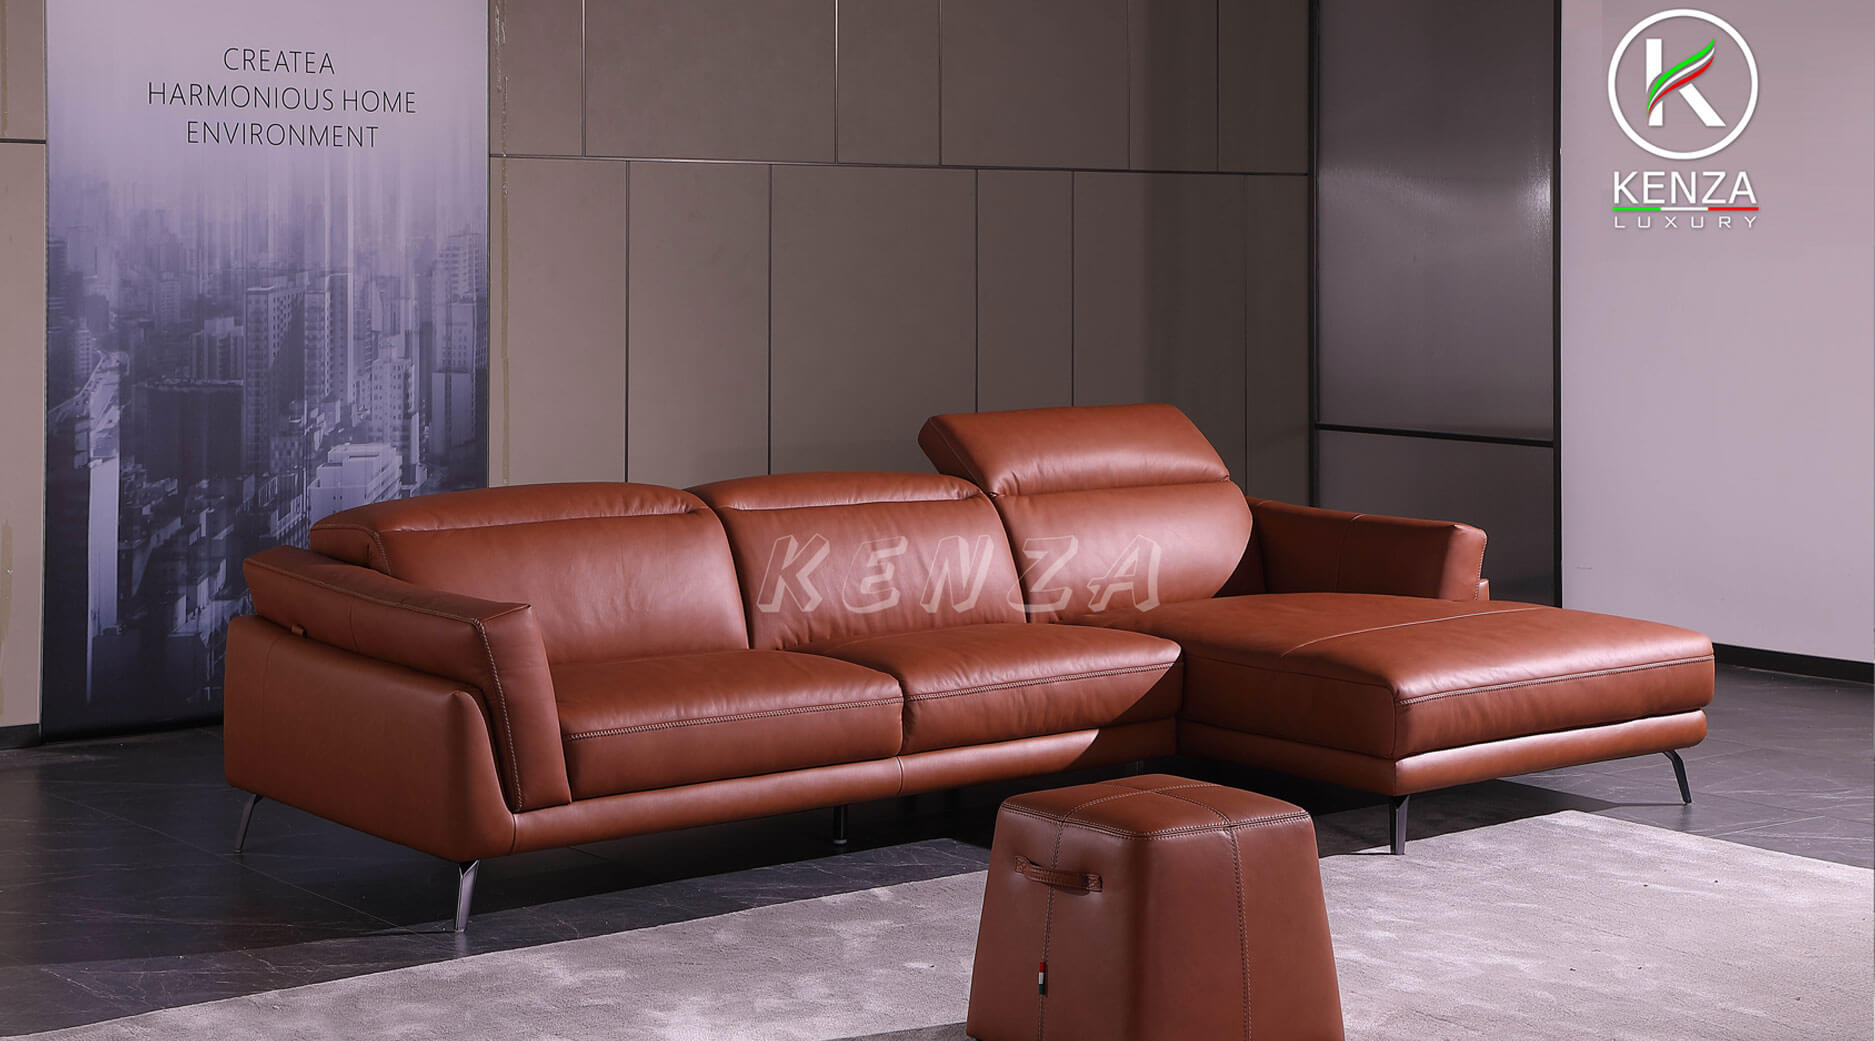 Bộ bàn ghế phòng khách hiện đại 2024 sẽ mang đến cho không gian của bạn nét đẹp hiện đại và sang trọng. Với các chất liệu đa dạng như gỗ, thép và kim loại, khách hàng có thể yên tâm về chất lượng và độ bền của sản phẩm. Hãy cùng xem hình ảnh của bộ bàn ghế phòng khách hiện đại 2024 để lựa chọn sản phẩm phù hợp cho không gian sống của bạn.